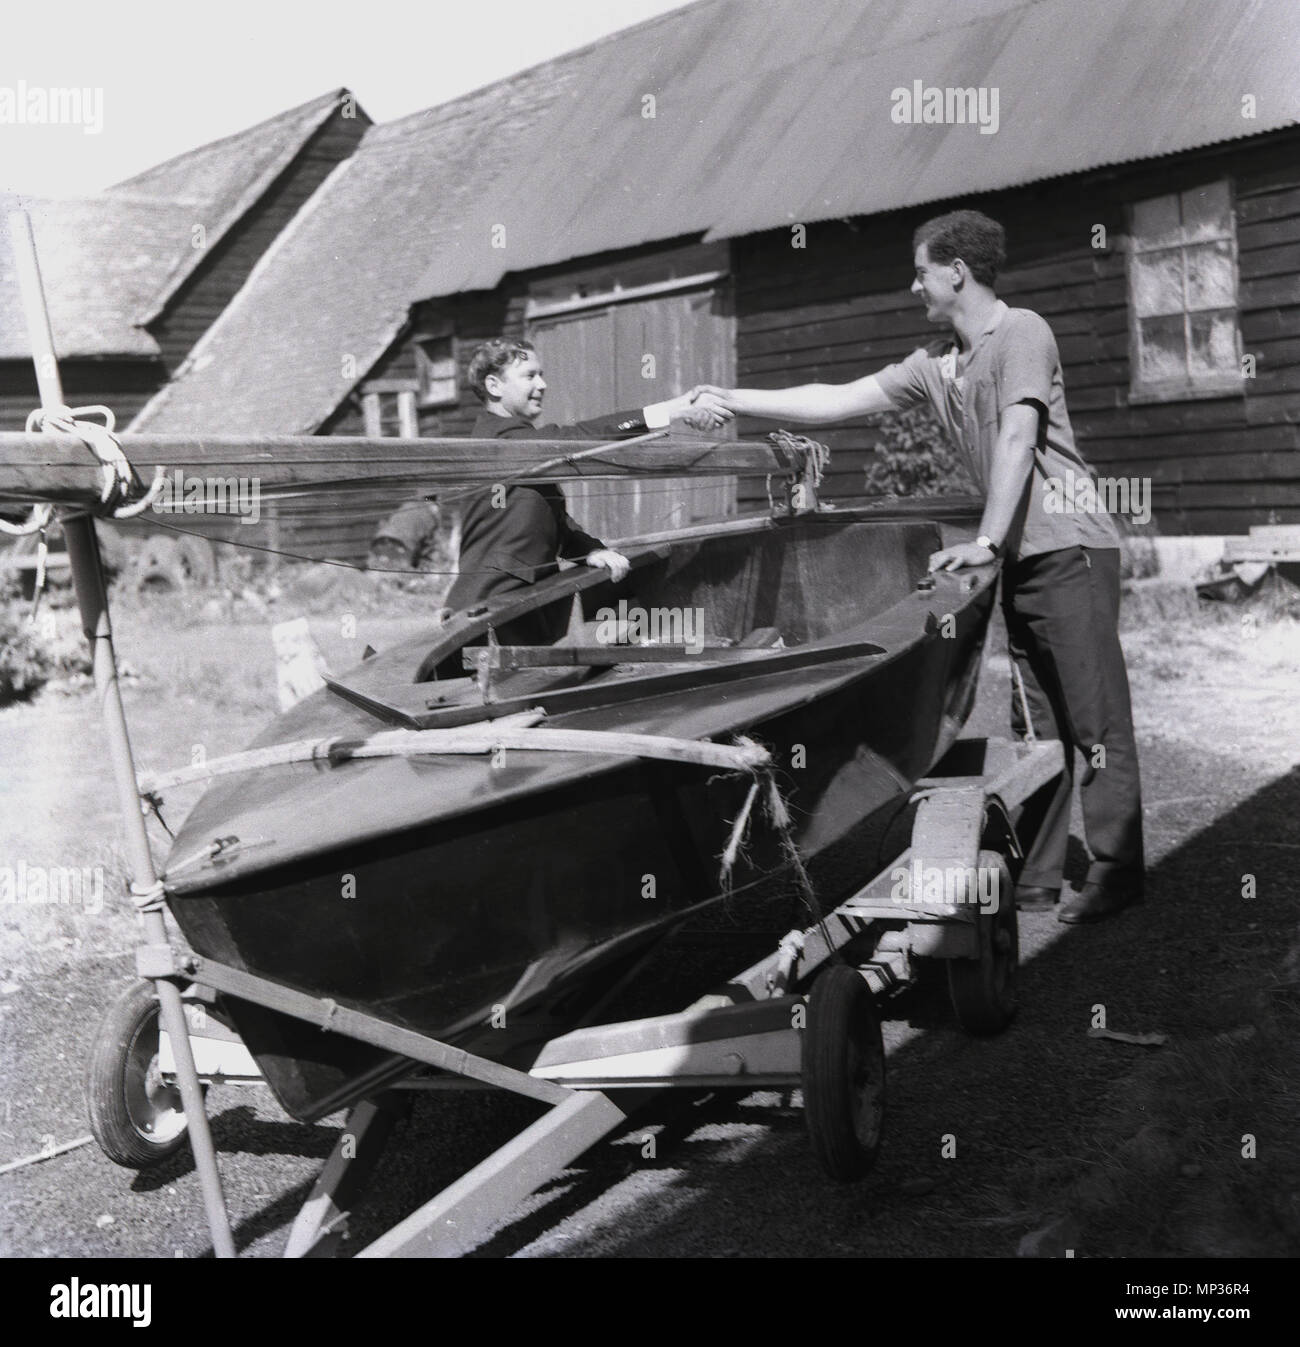 1964, historische,.." Sein Ihr'....Mann die Hände schütteln und Übergabe einer kleinen offenen Boot oder Beiboot, mit Mast und Segel, einer jungen Person, "England, UK. Stockfoto